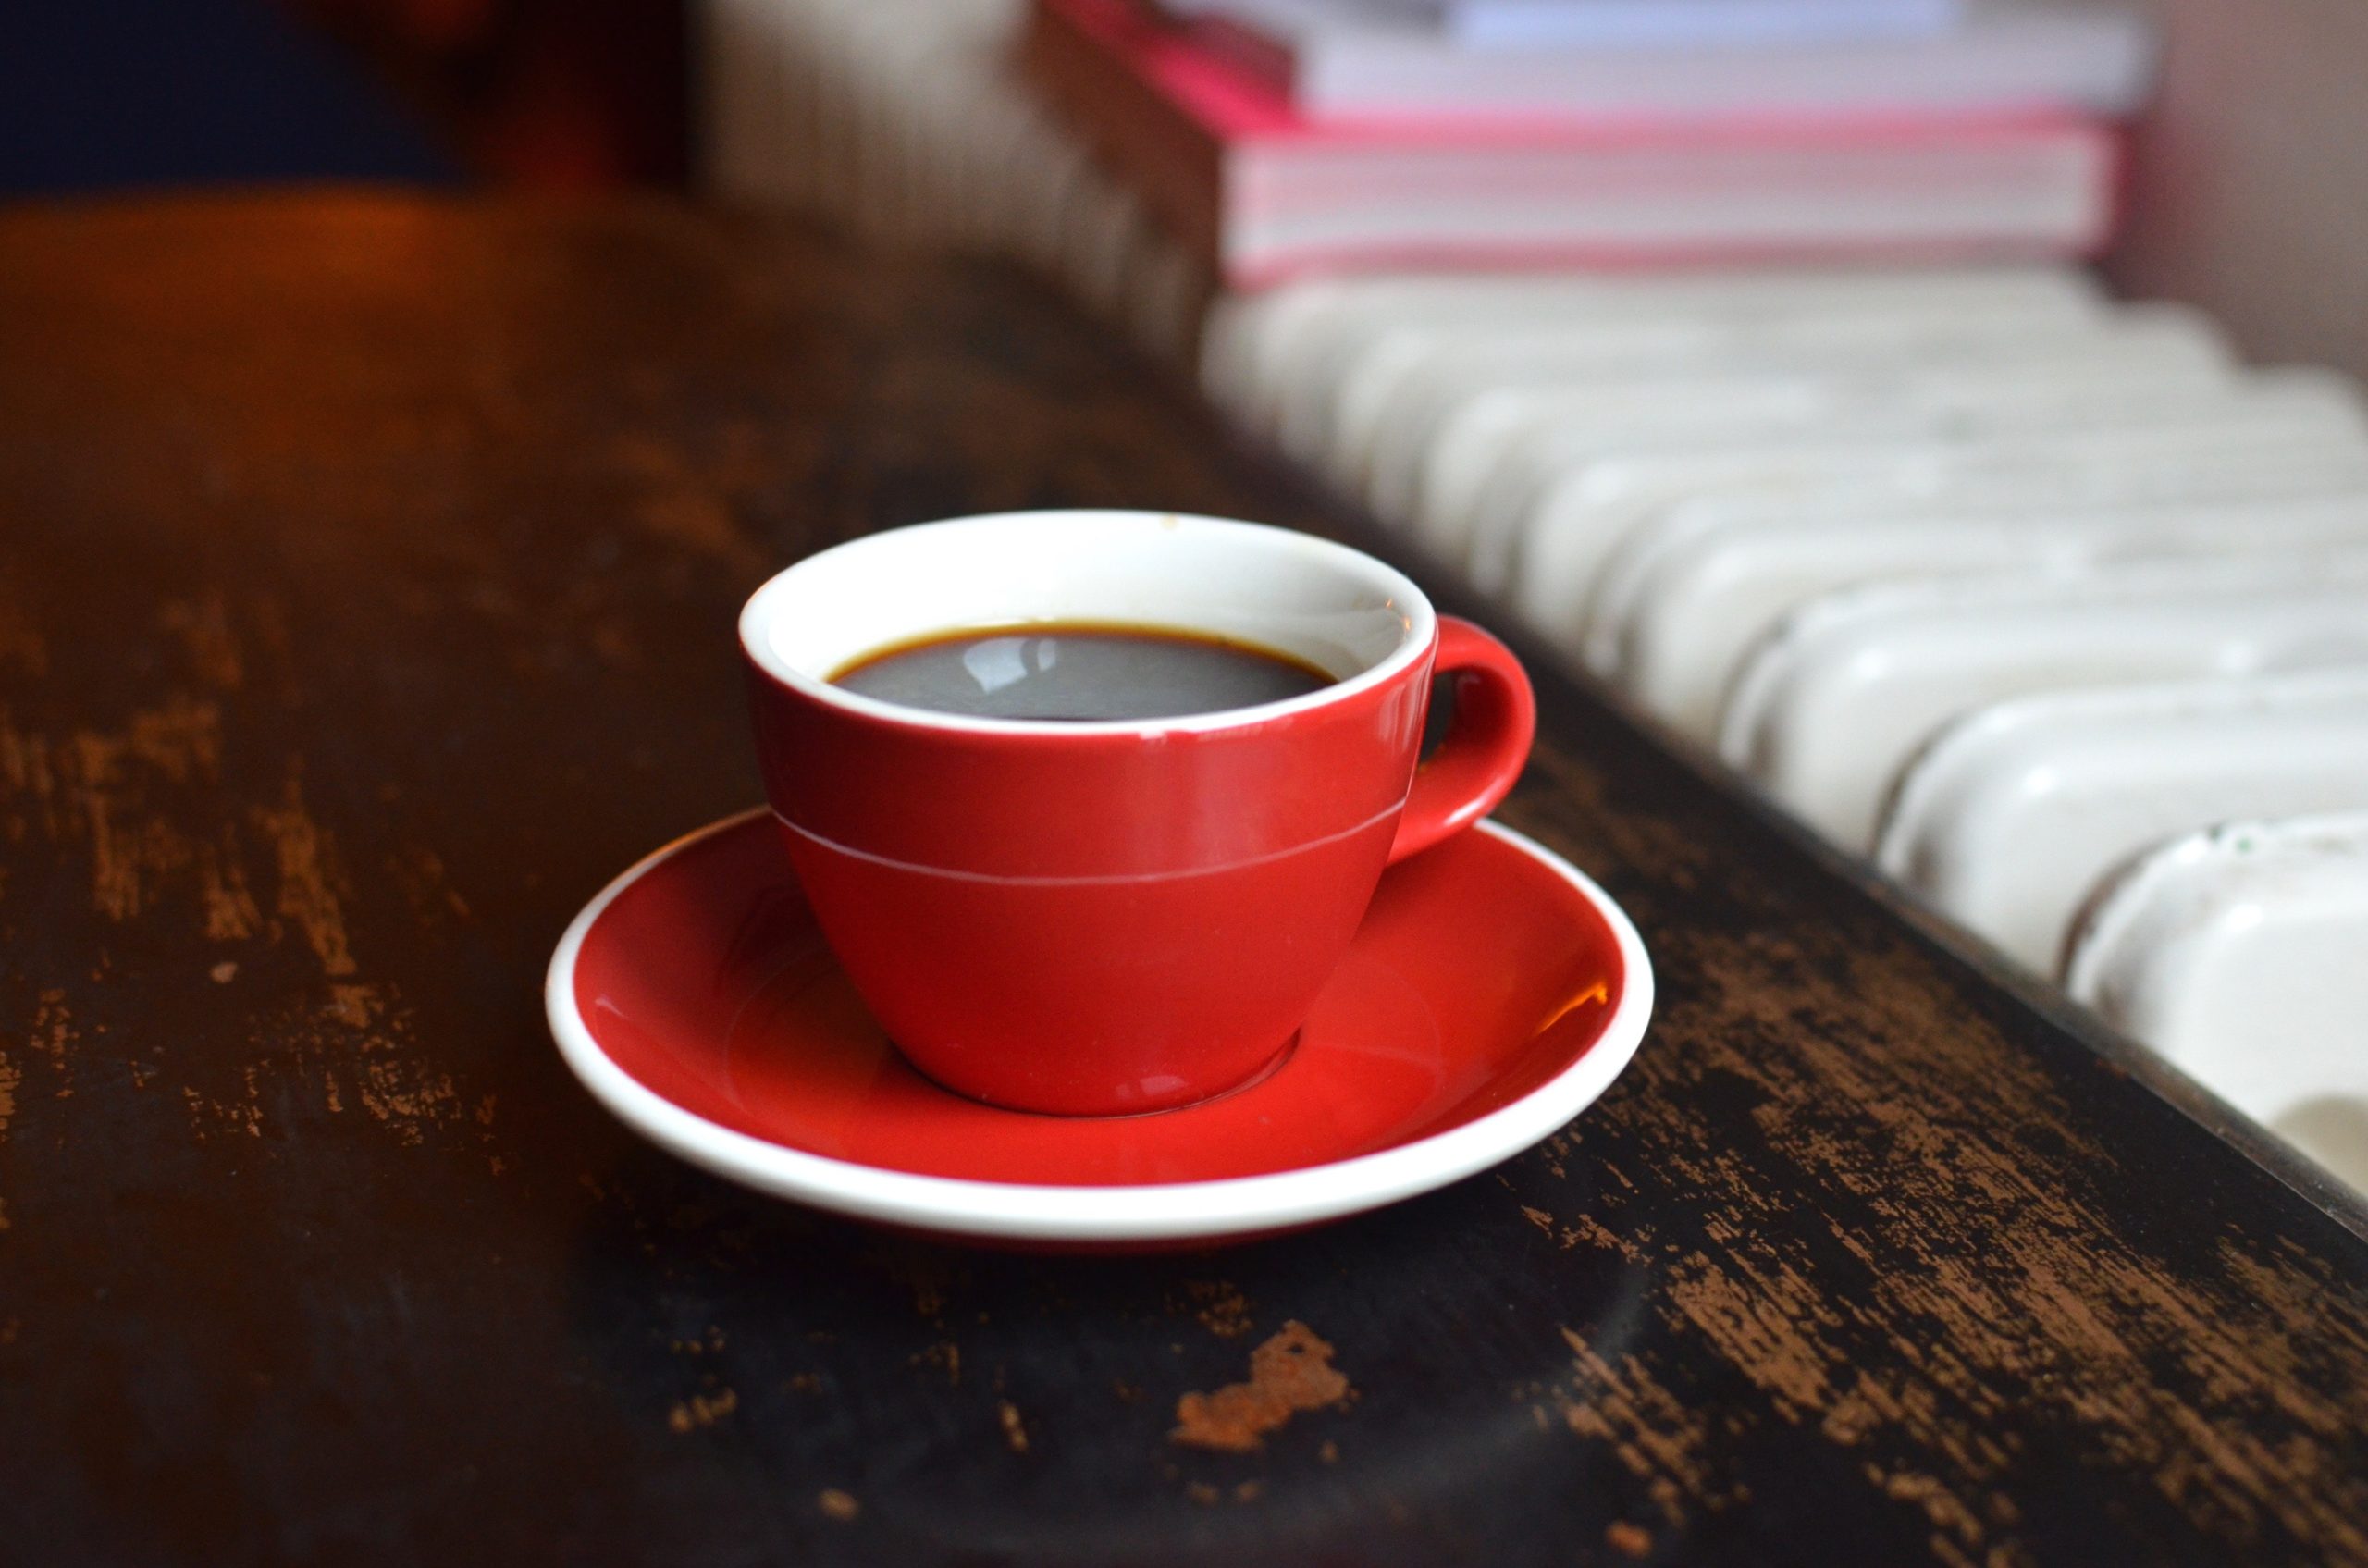 Valkeakosken ammattiopisto, VAAO. Lähikuvassa punainen kahvikuppi, jossa on kahvia.